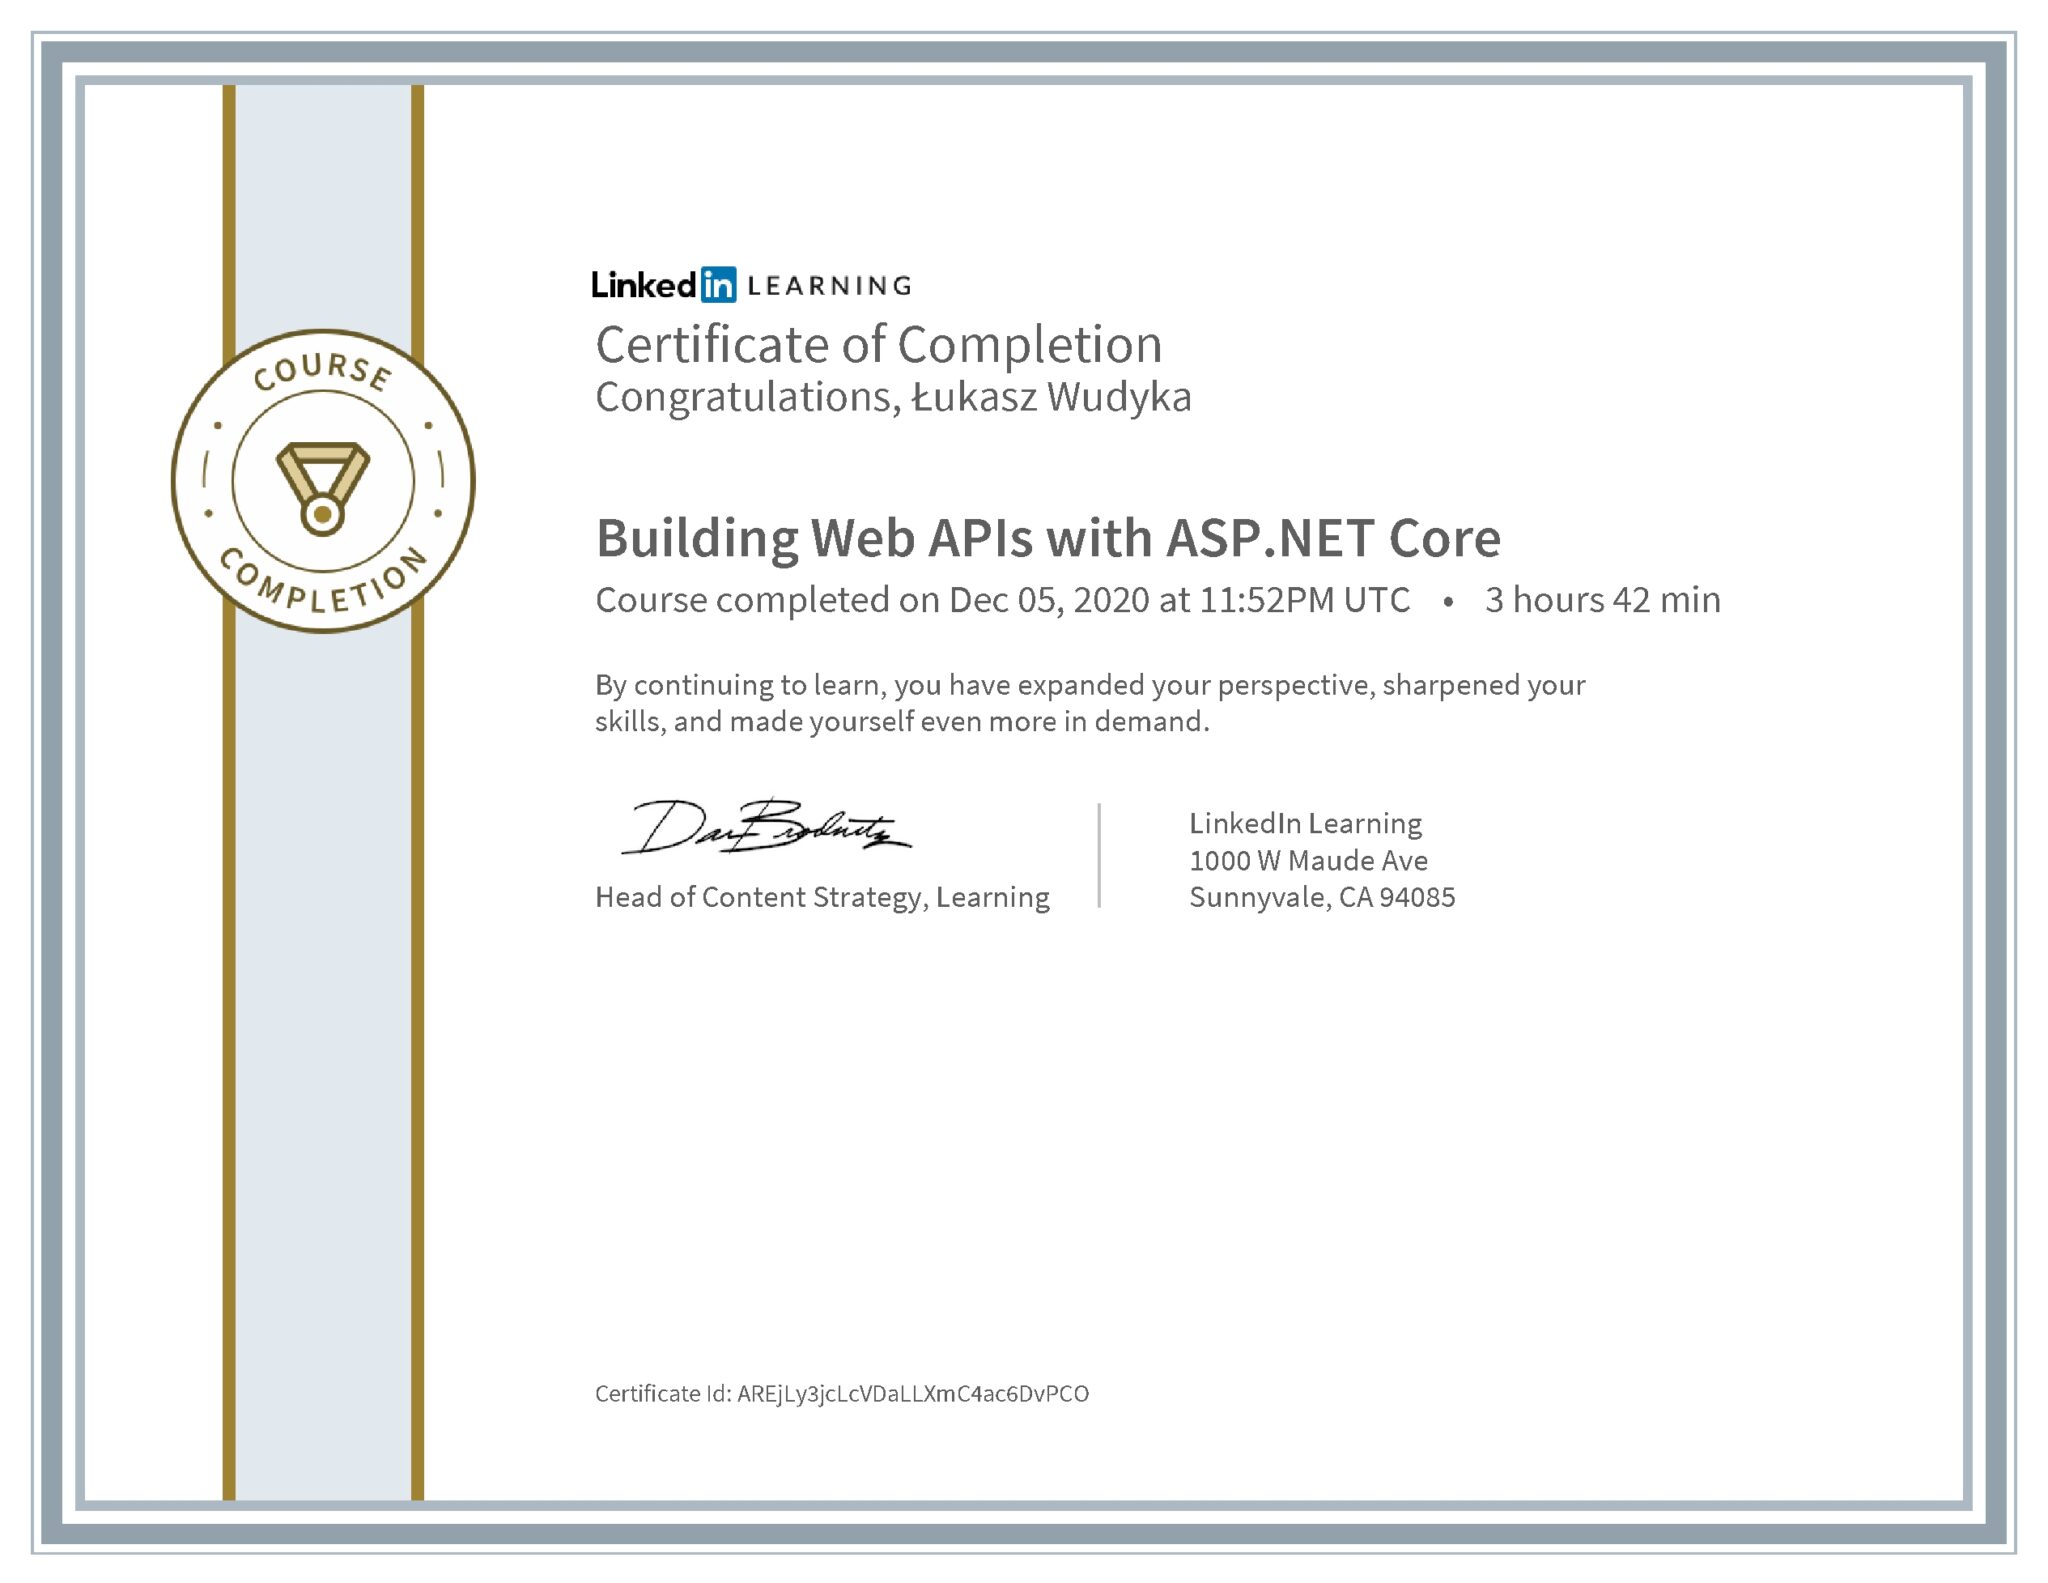 Łukasz Wudyka certyfikat LinkedIn Building Web APIs with ASP.NET Core